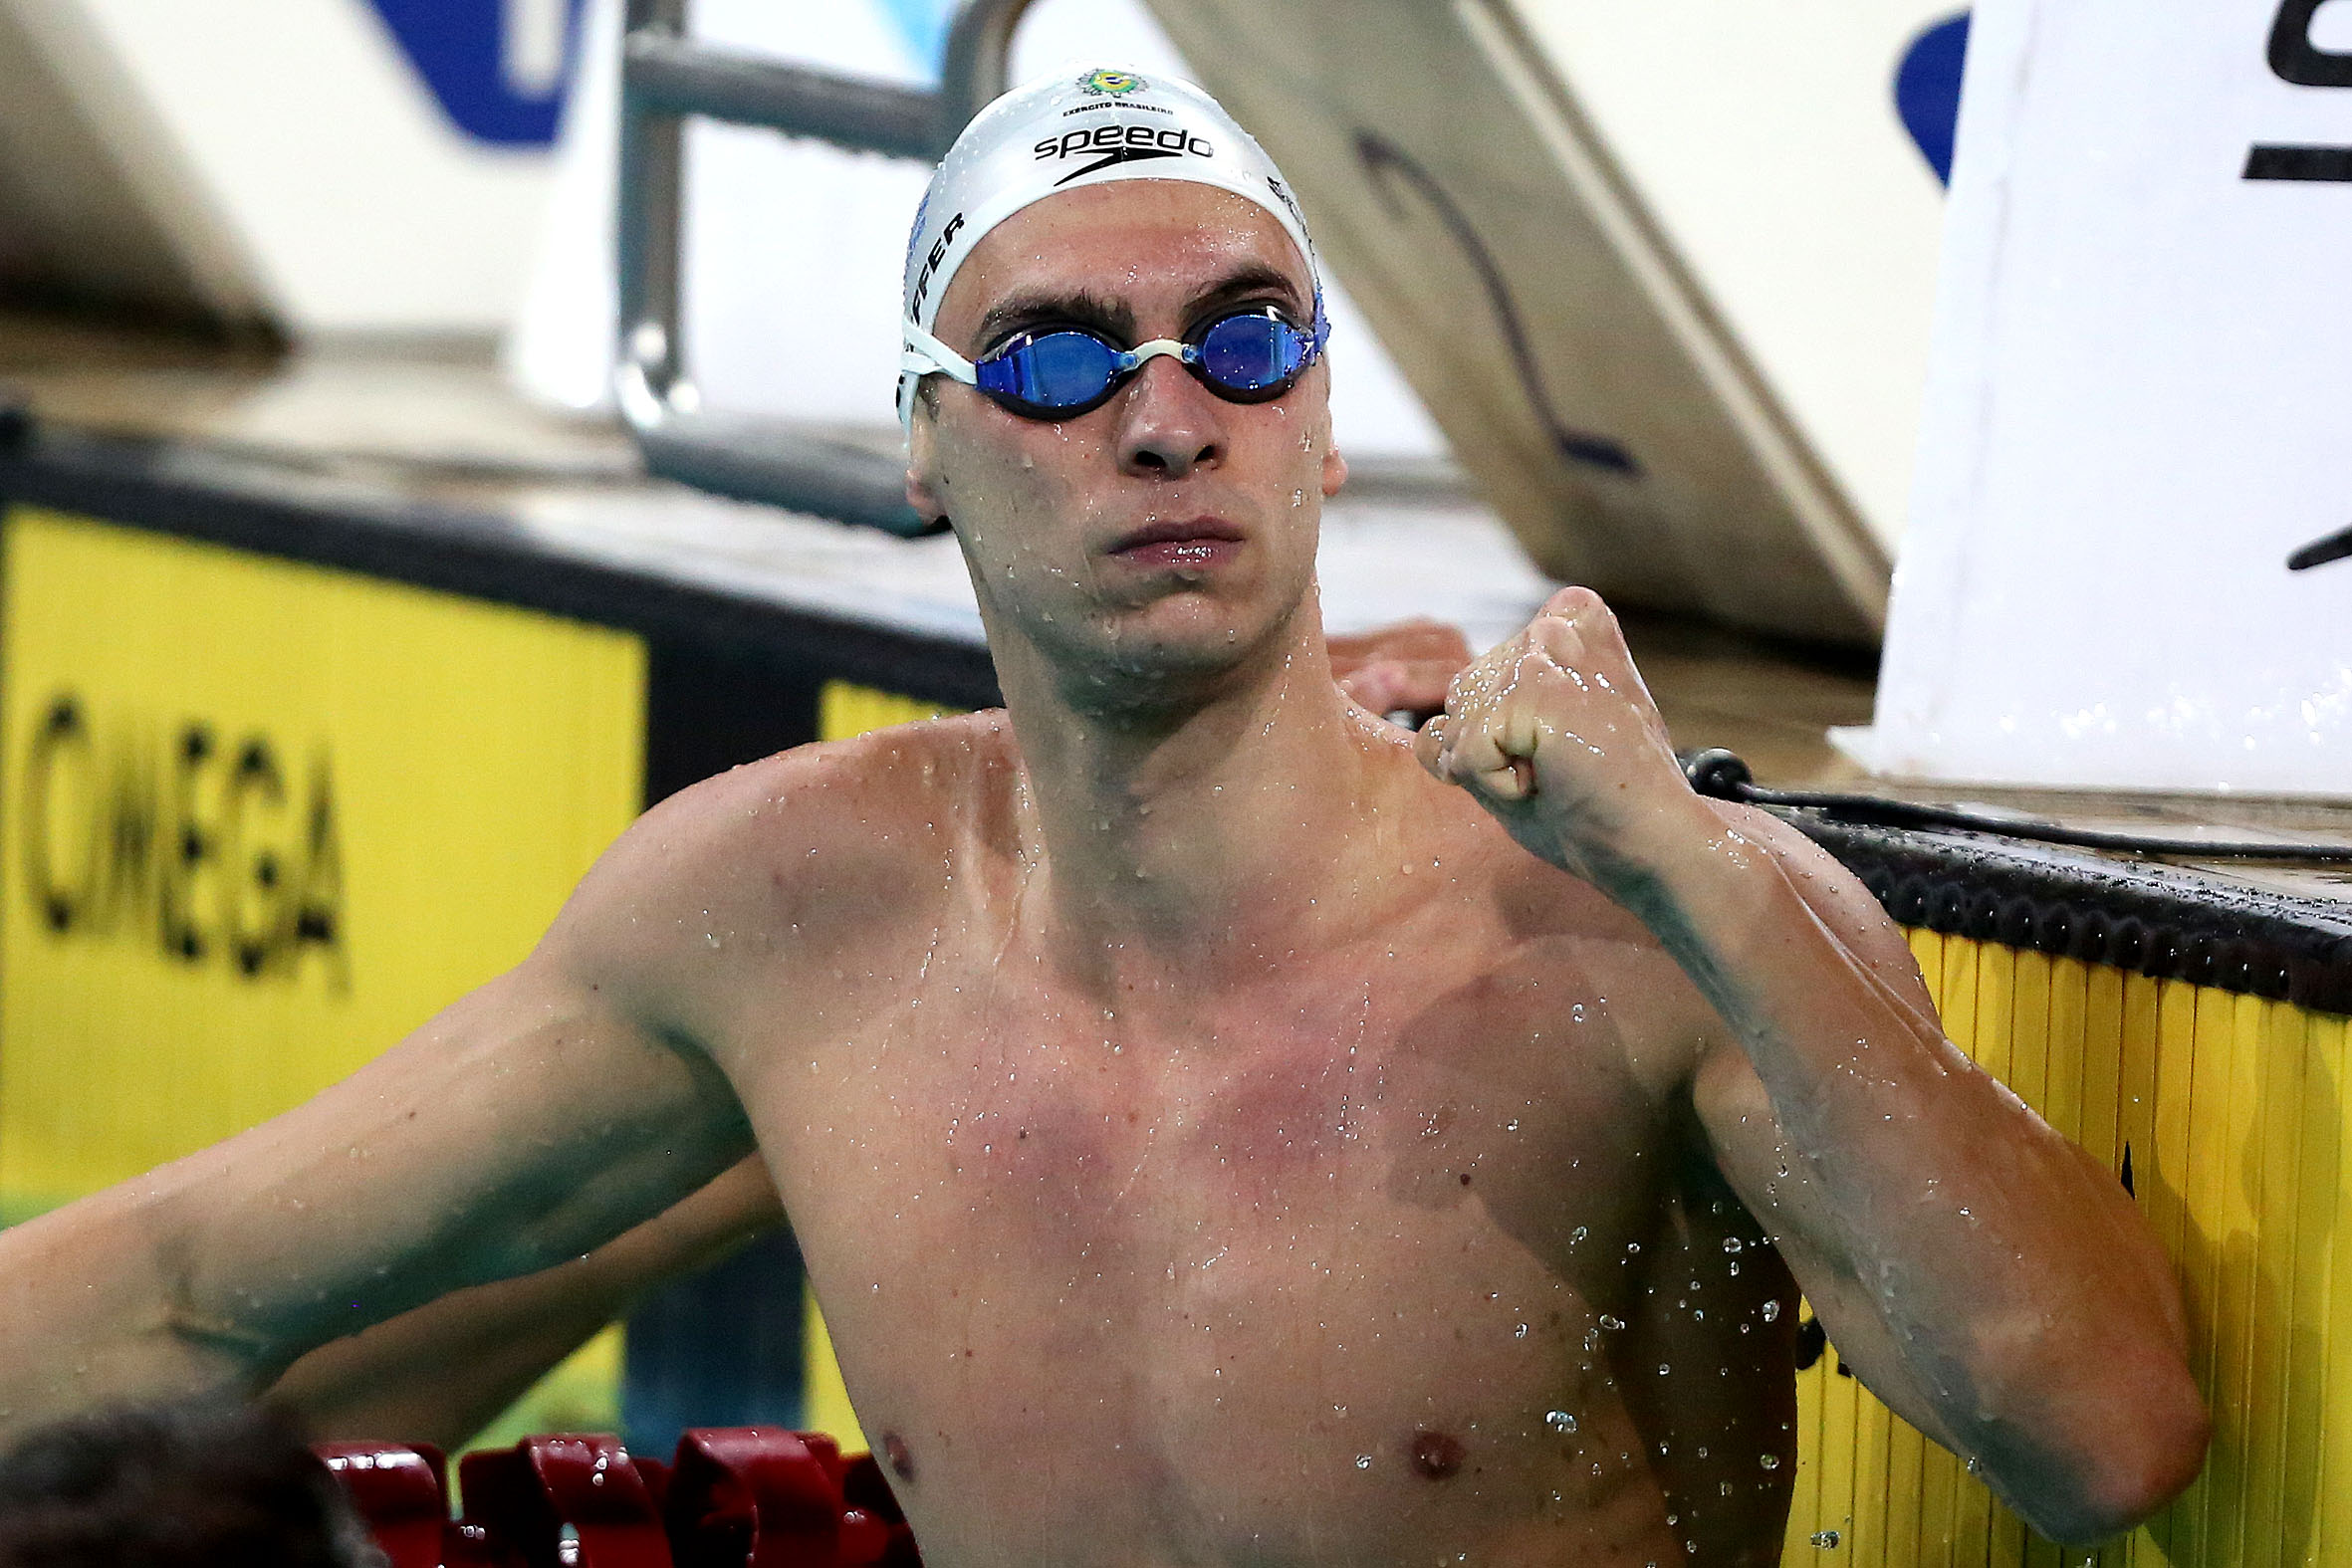 Medalhista mundial, Fernando Scheffer vai nadar duas provas nos Jogos de Tóquio